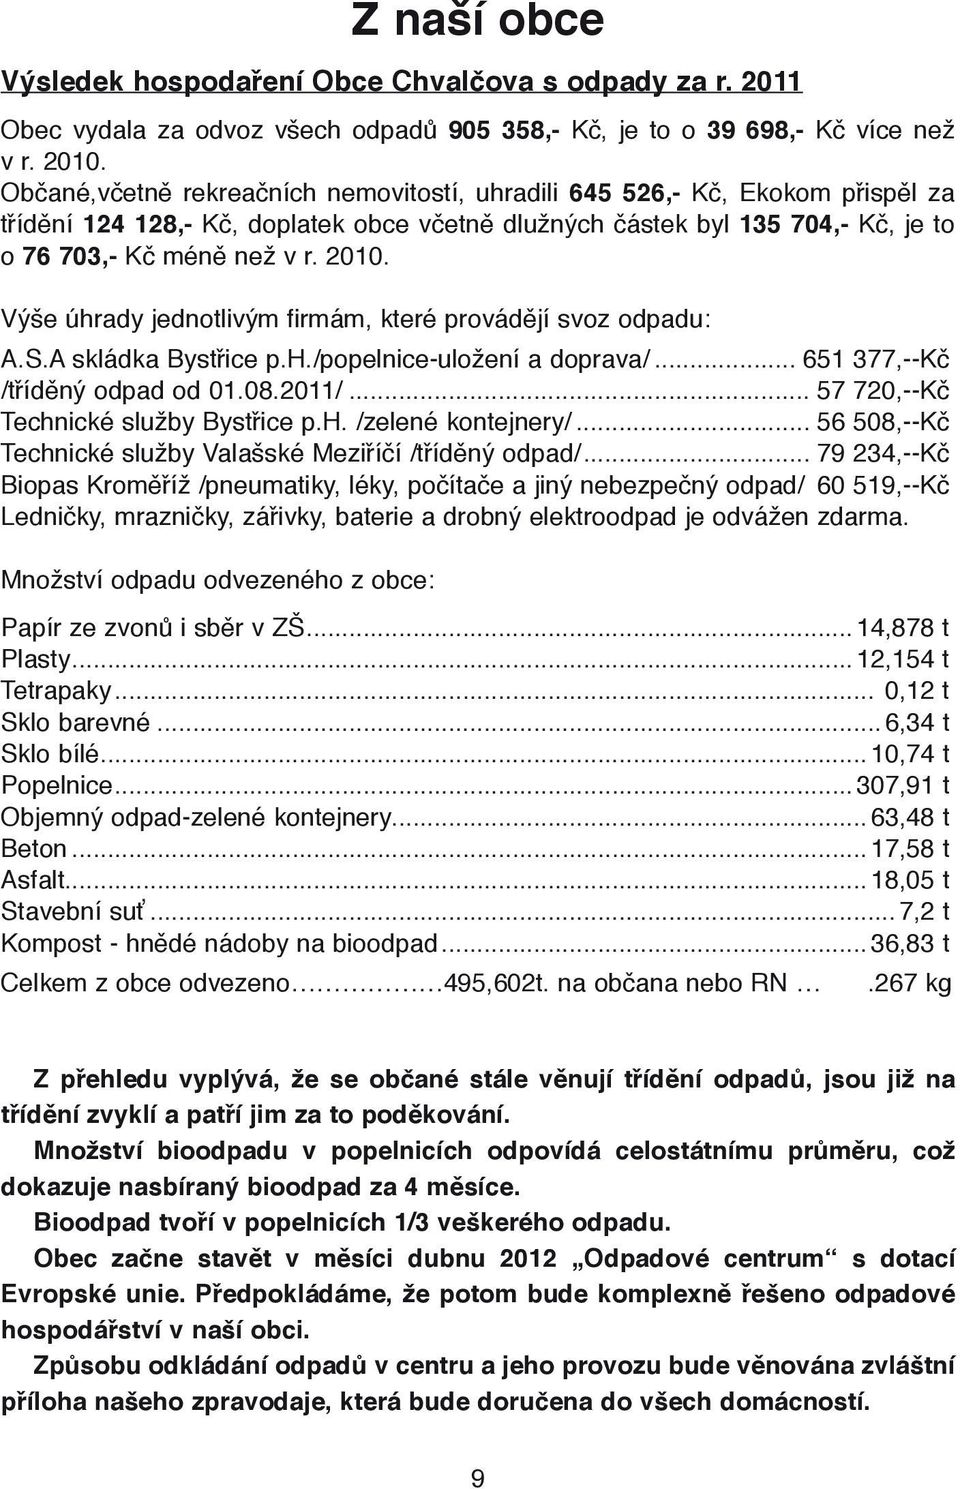 Výše úhrady jednotlivým firmám, které provádějí svoz odpadu: A.S.A skládka Bystřice p.h./popelnice-uložení a doprava/... 651 377,--Kč /tříděný odpad od 01.08.2011/.